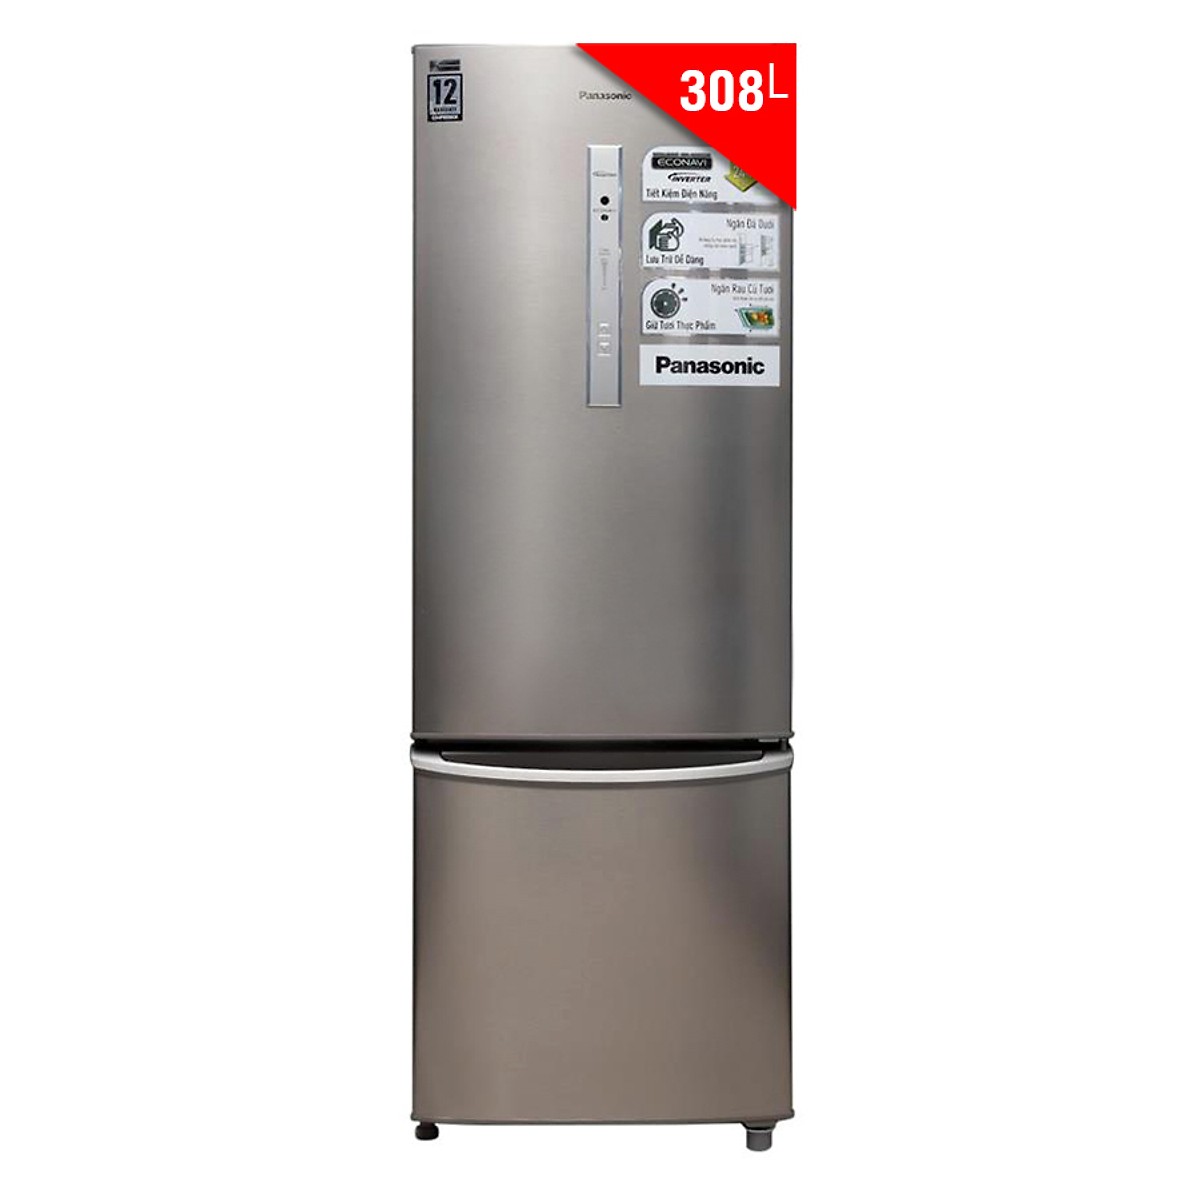 Tủ Lạnh Panasonic NR-BR347ZSVN (308 Lít) - Hàng Chính Hãng